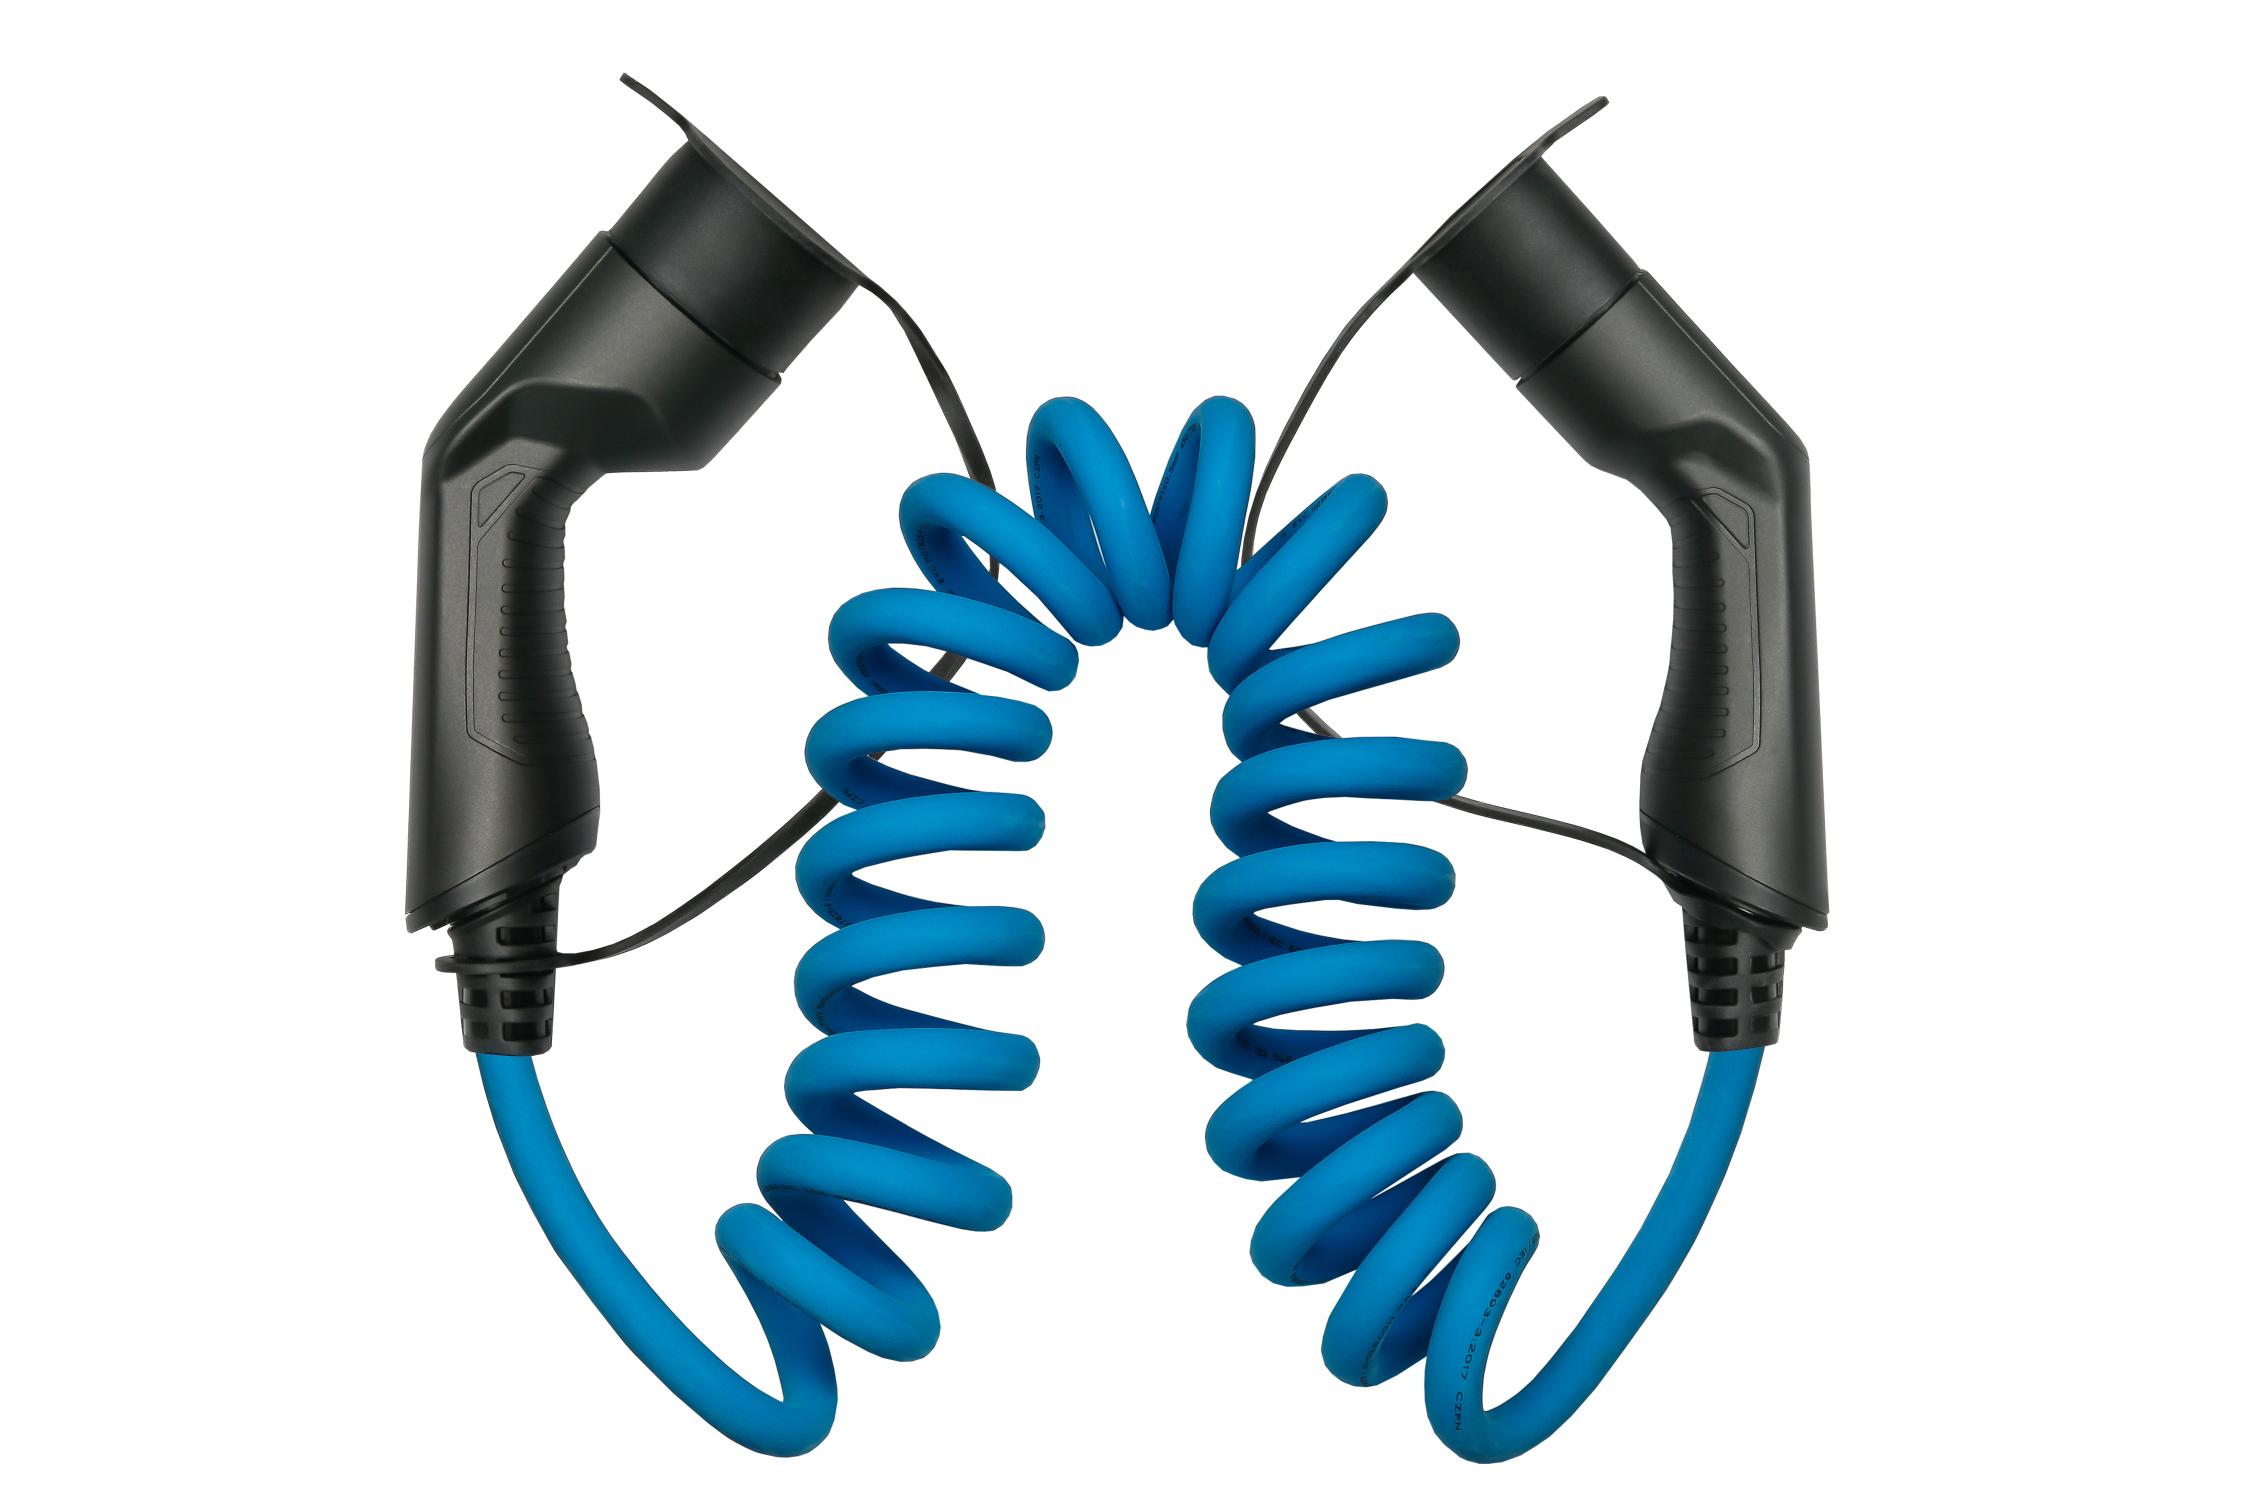 kabelmeister® E-Auto-Ladekabel Mode 3, Typ 2 Stecker an Buchse, 3-phasig,  32 A, 22 kW, Spiralkabel, blau, 5m, Typ 2 Ladekabel, Elektromobilität